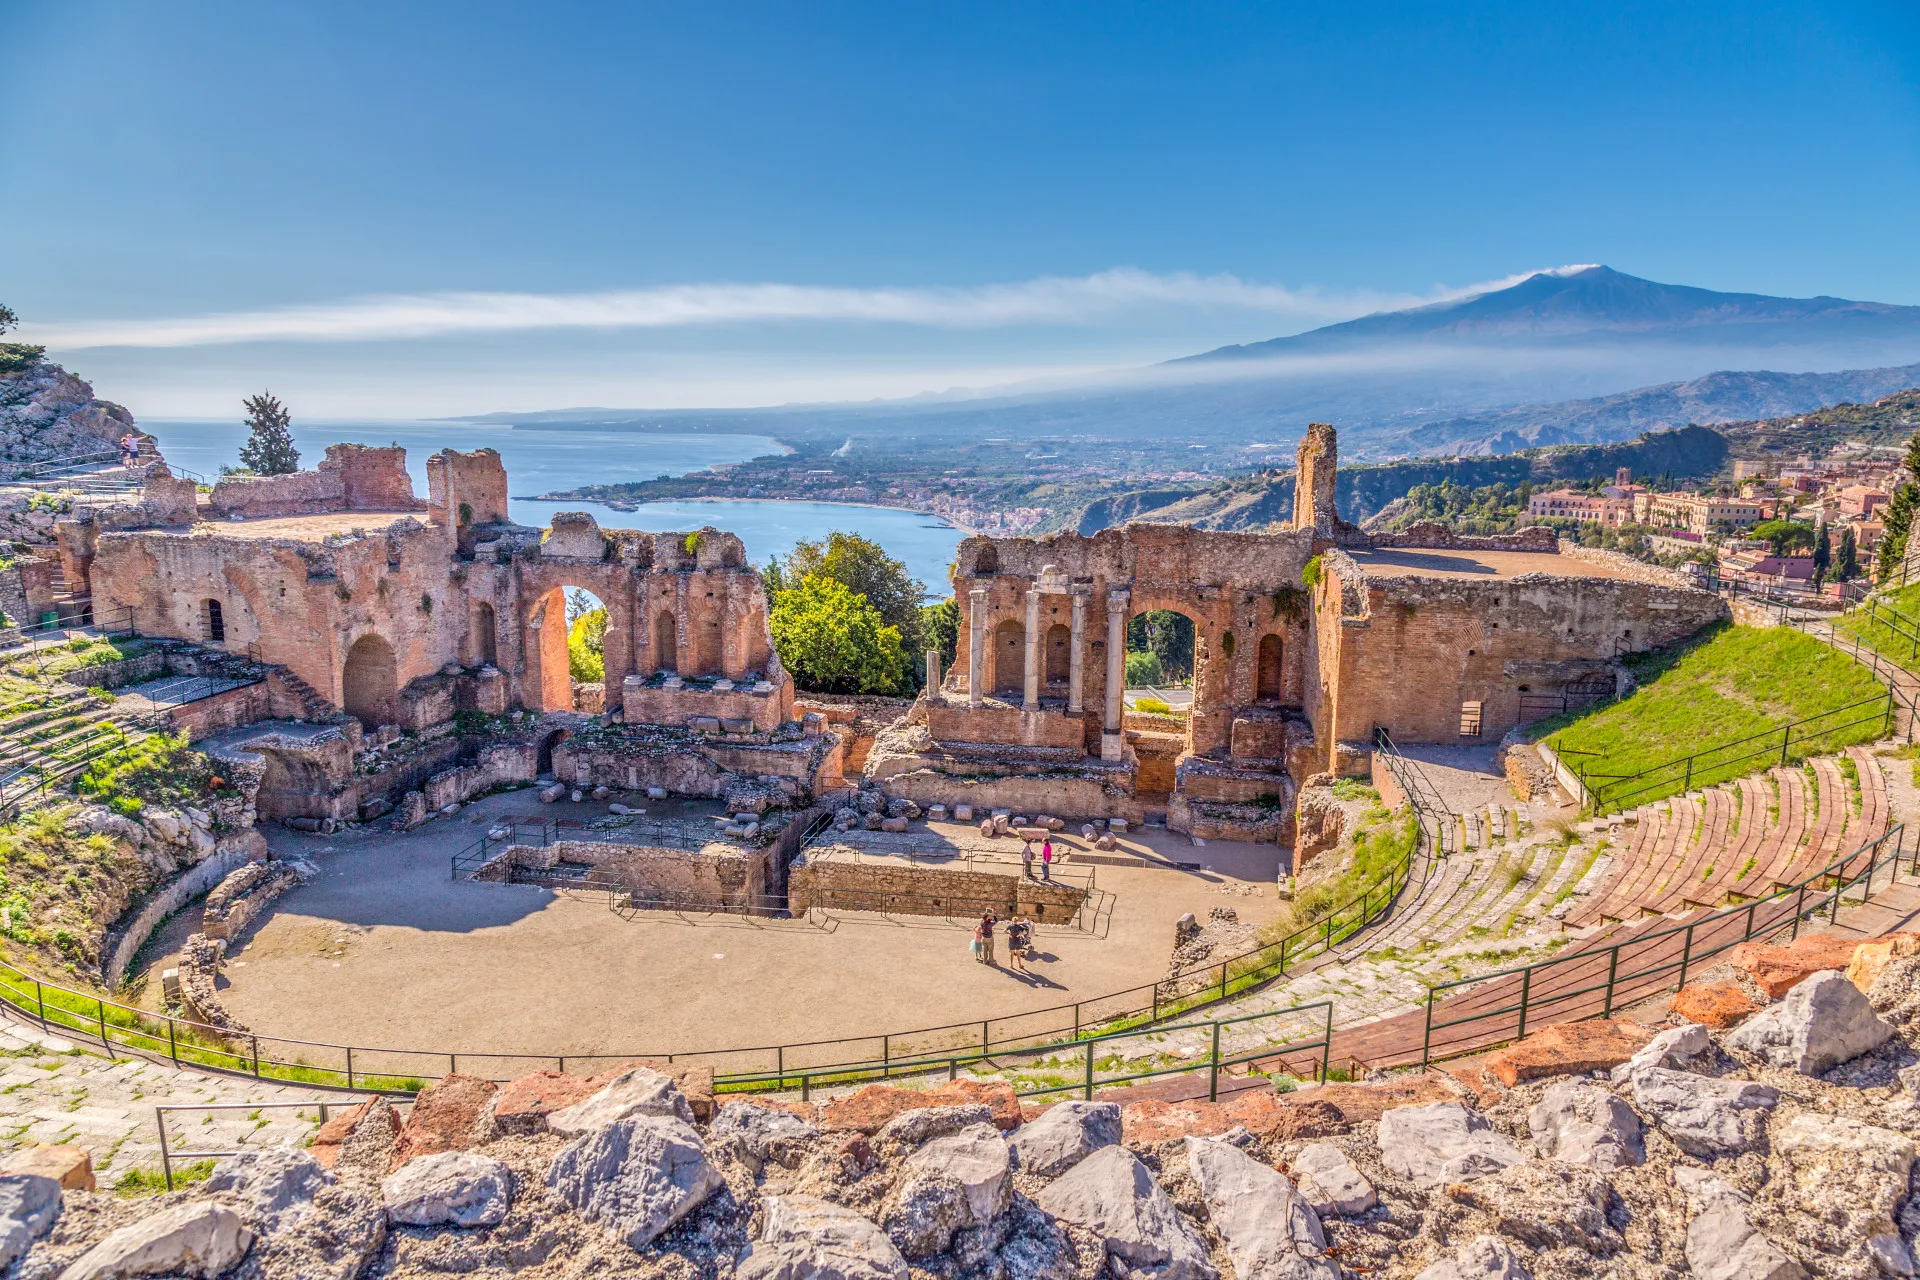 Griekse theater Taormina met op achtergrond Etna